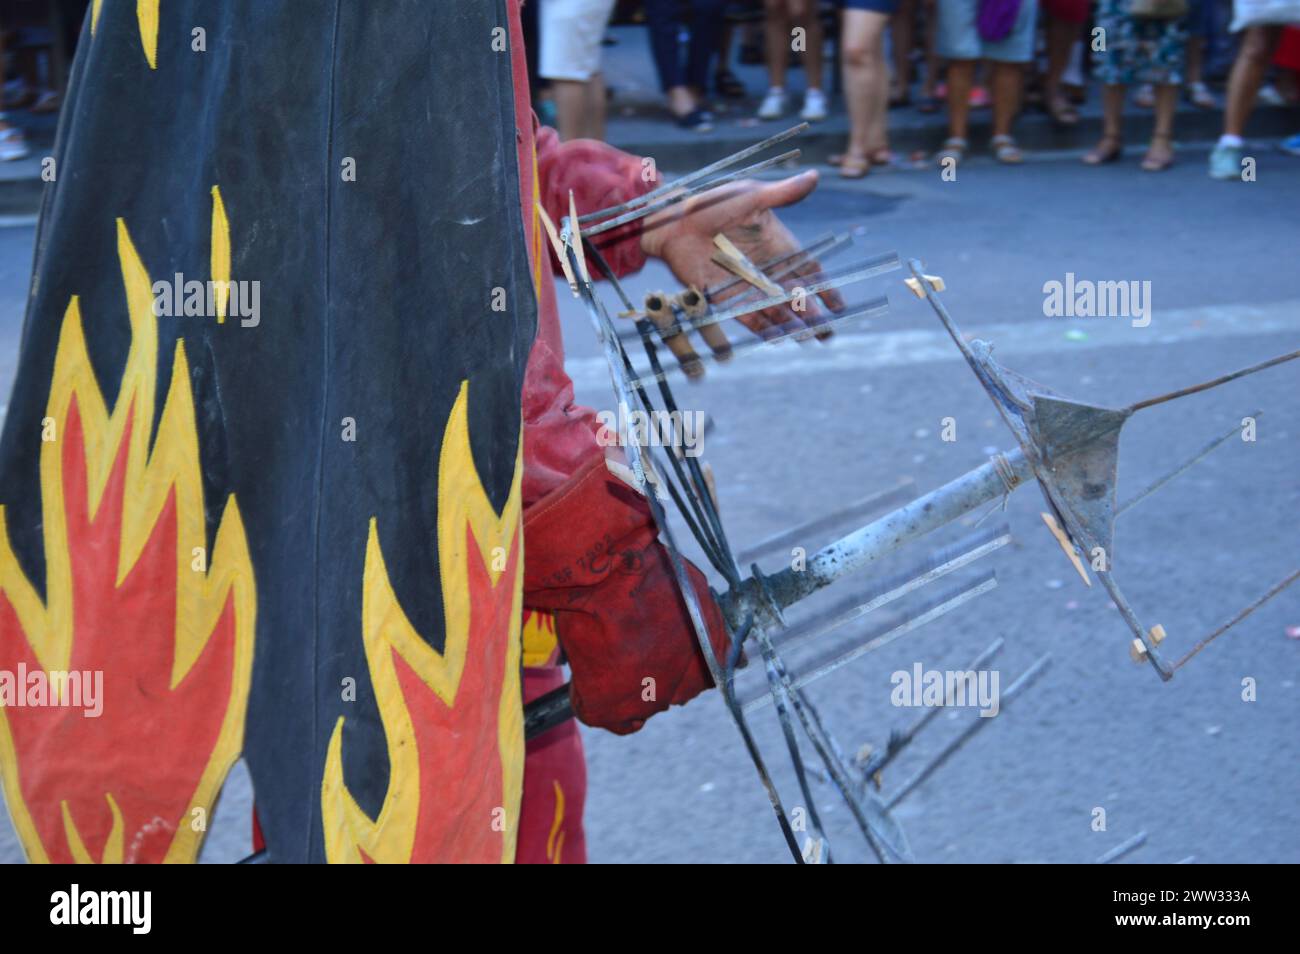 En la fotografía se puede ver la celebración de un Correfocs en el barrio de Grácia. Personas disfrazadas de demonios disparando fuegos artificiales. Stock Photo